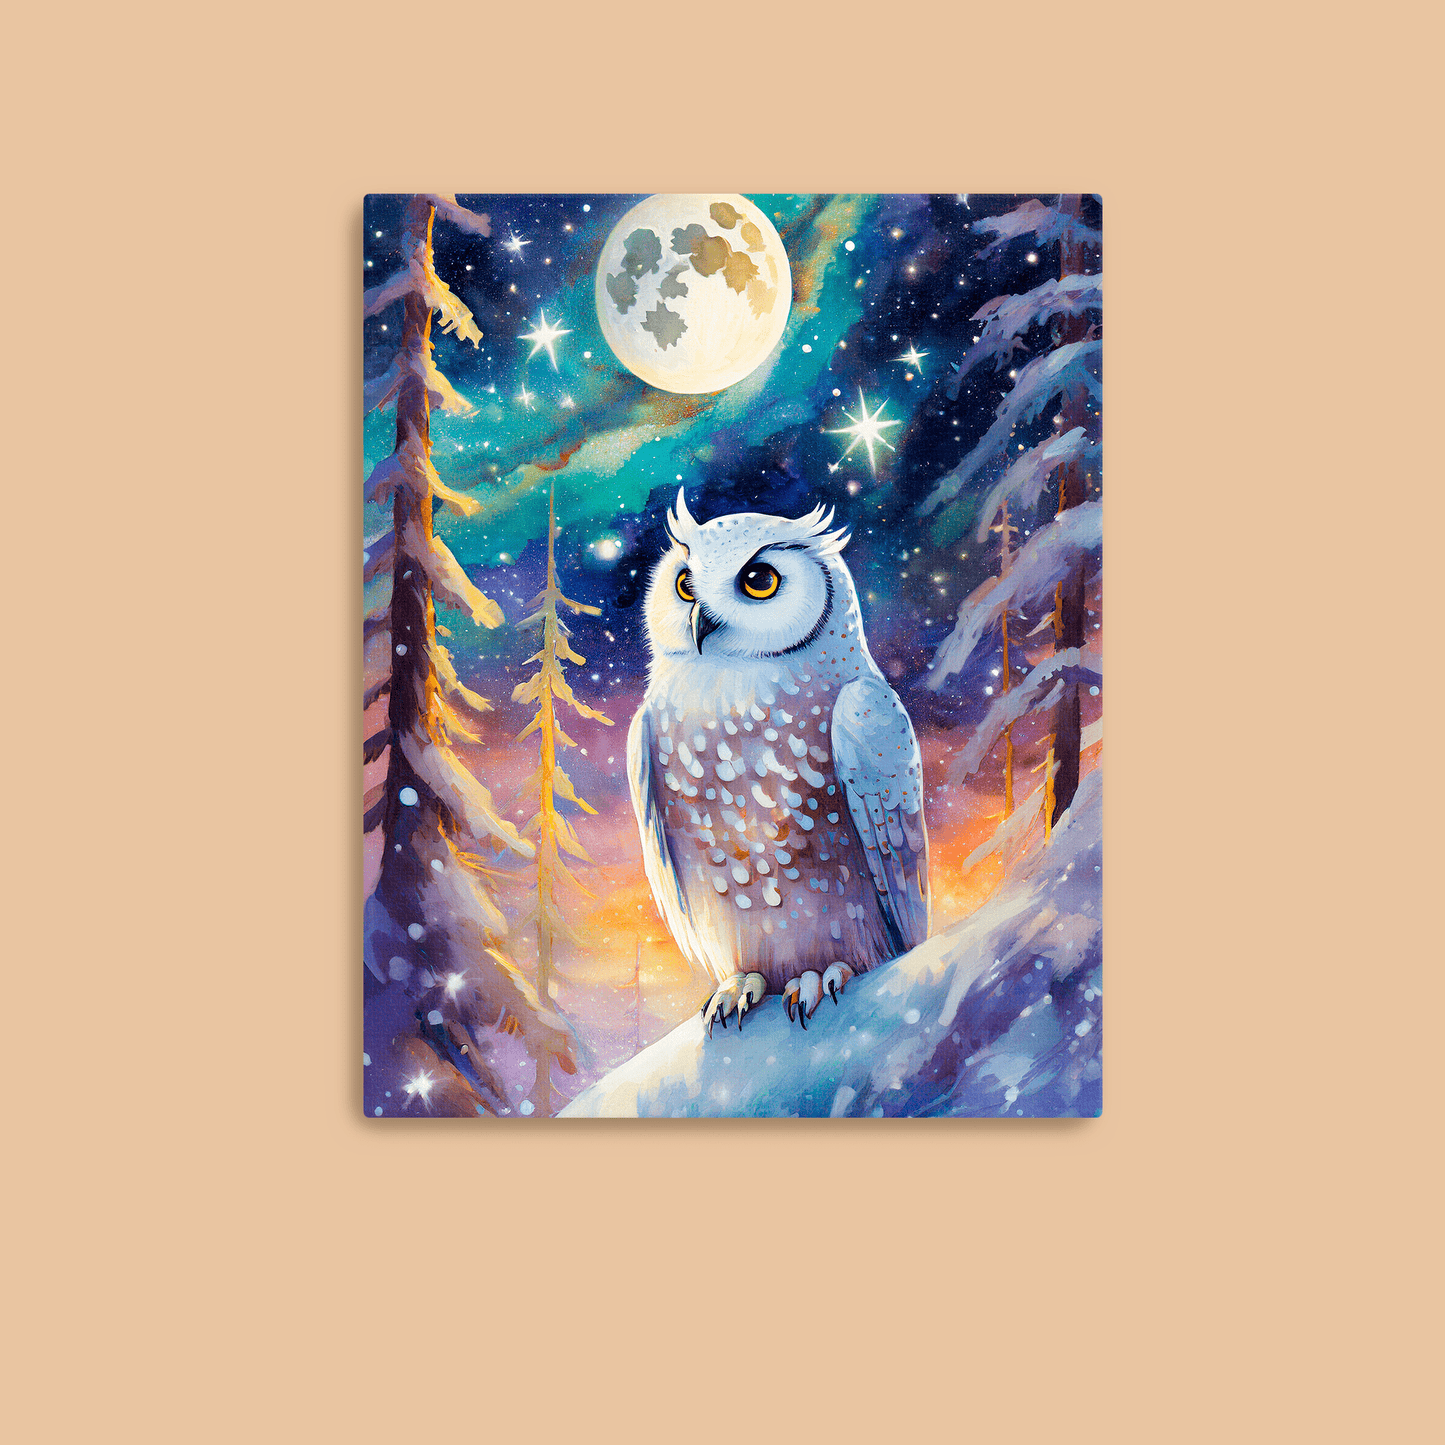 Cosmic Owl - Metal Poster - Premium Metal Print